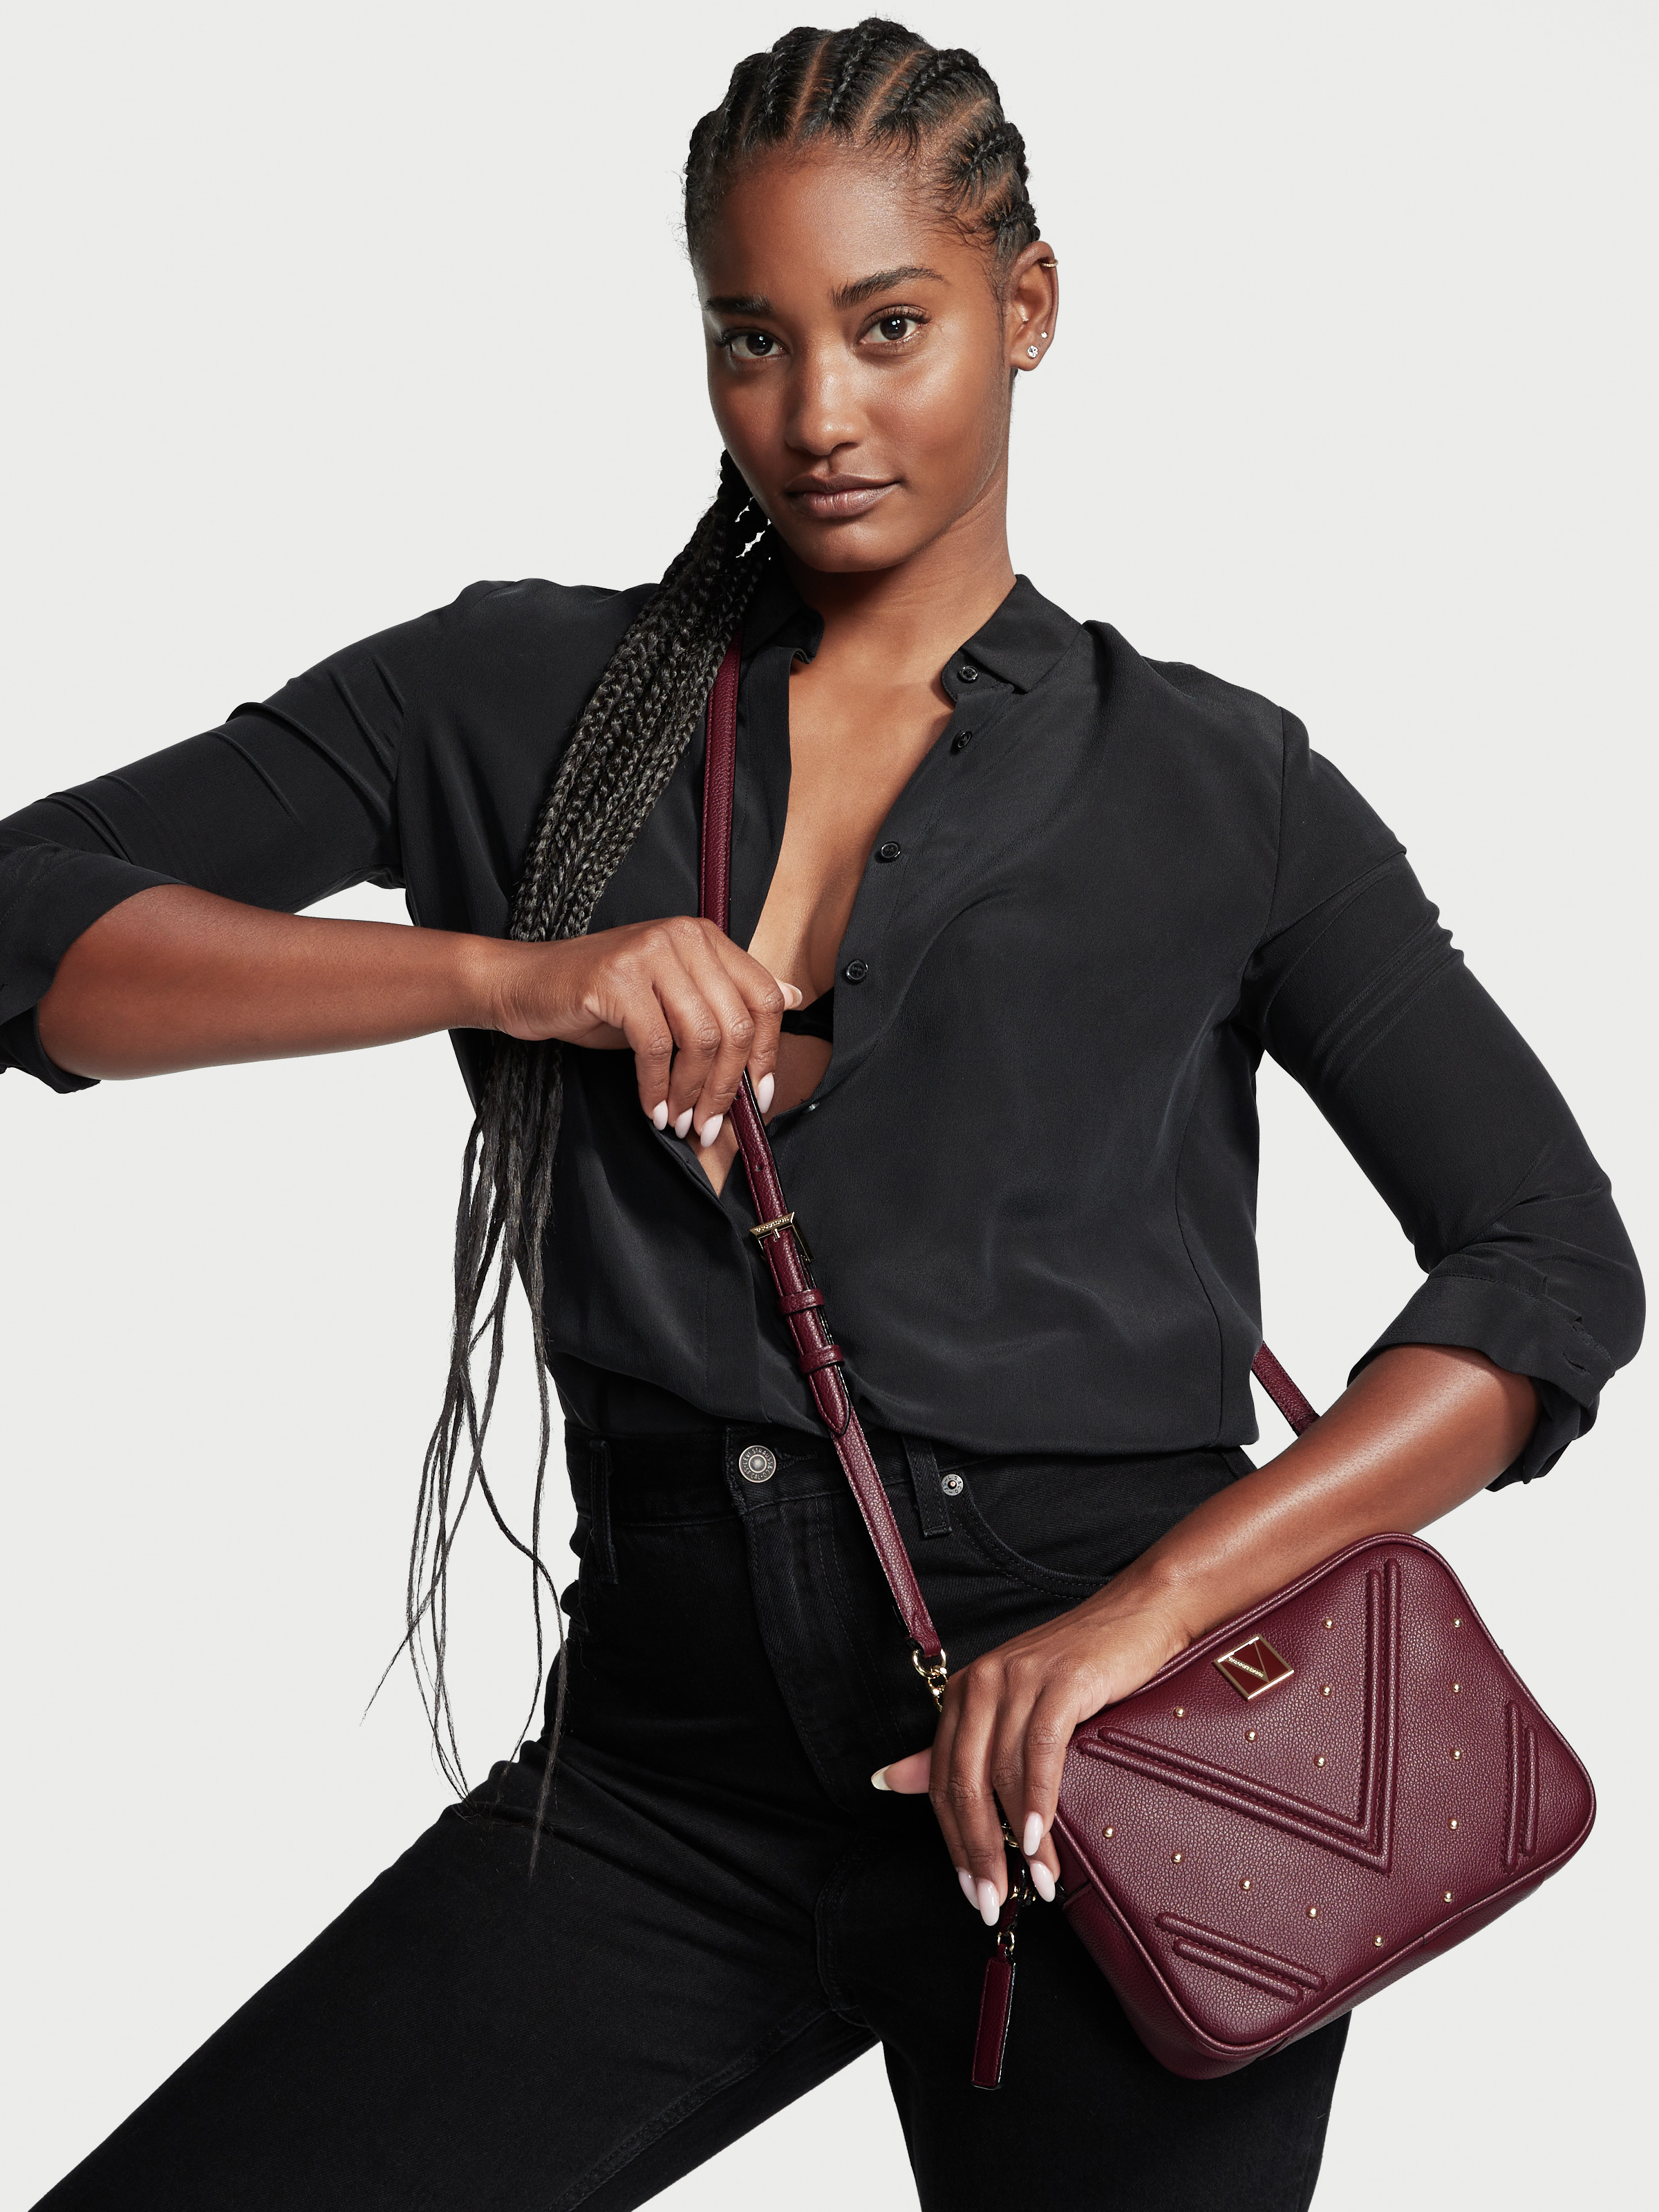 Louis Vuitton tease sa nouvelle collection d'accessoires en cuir